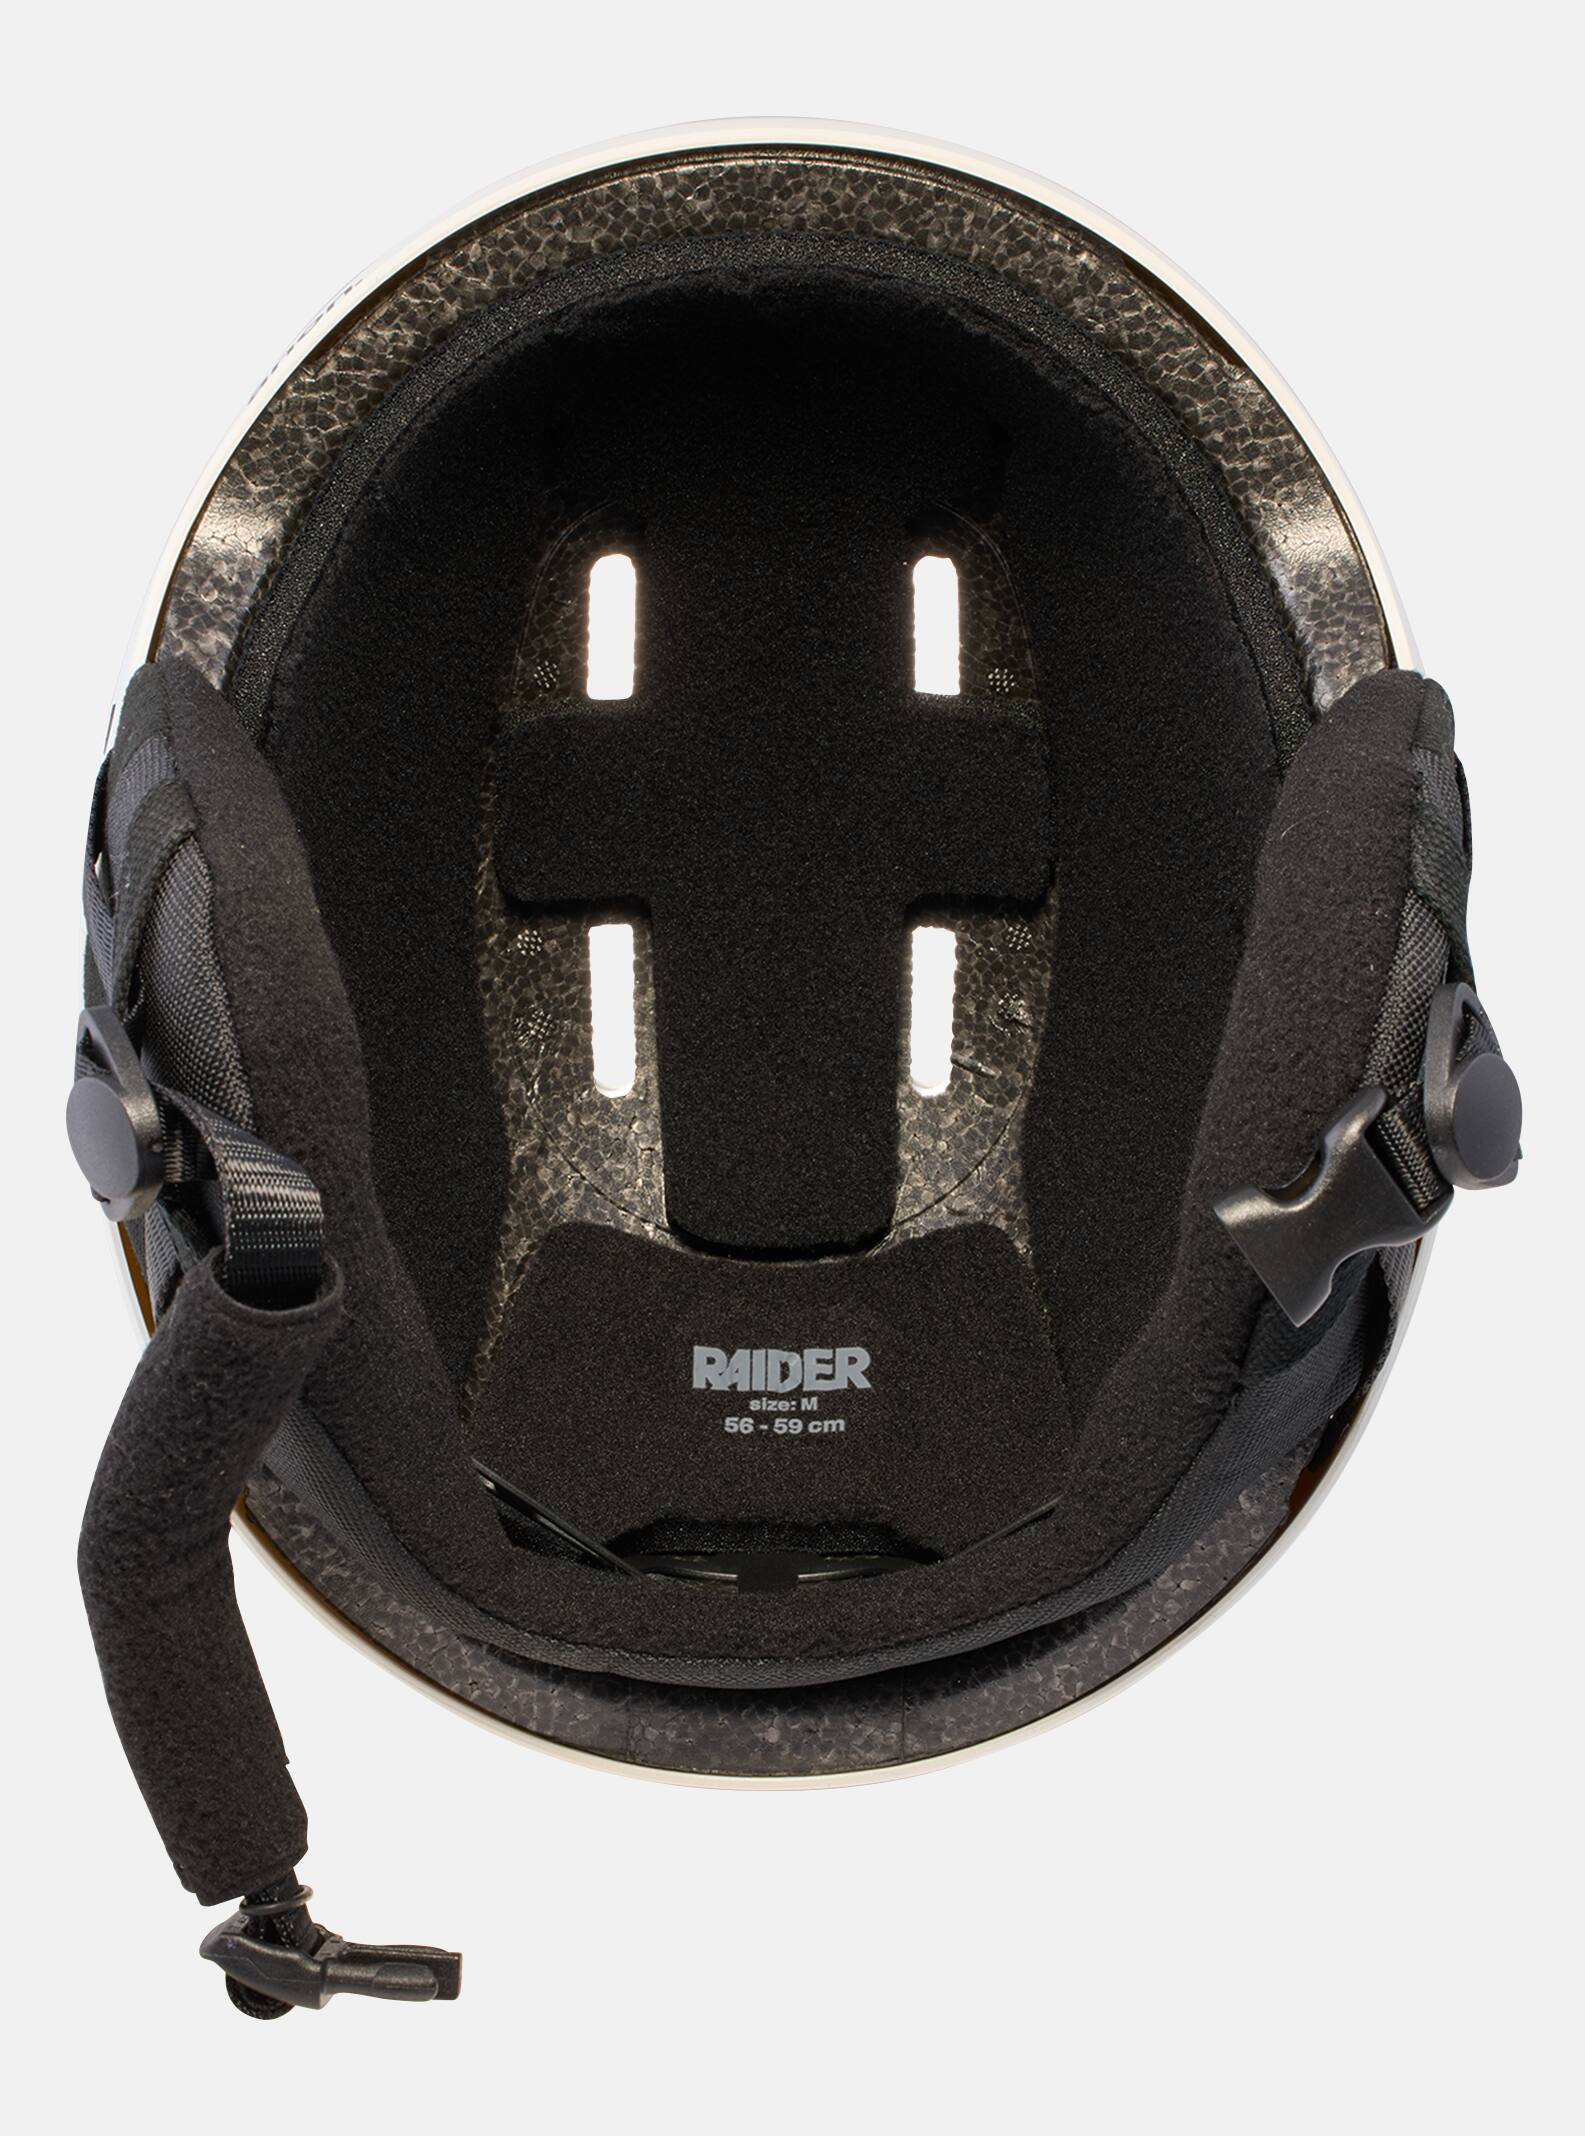 Raider 3 Round Fit Ski & Snowboard Helmet